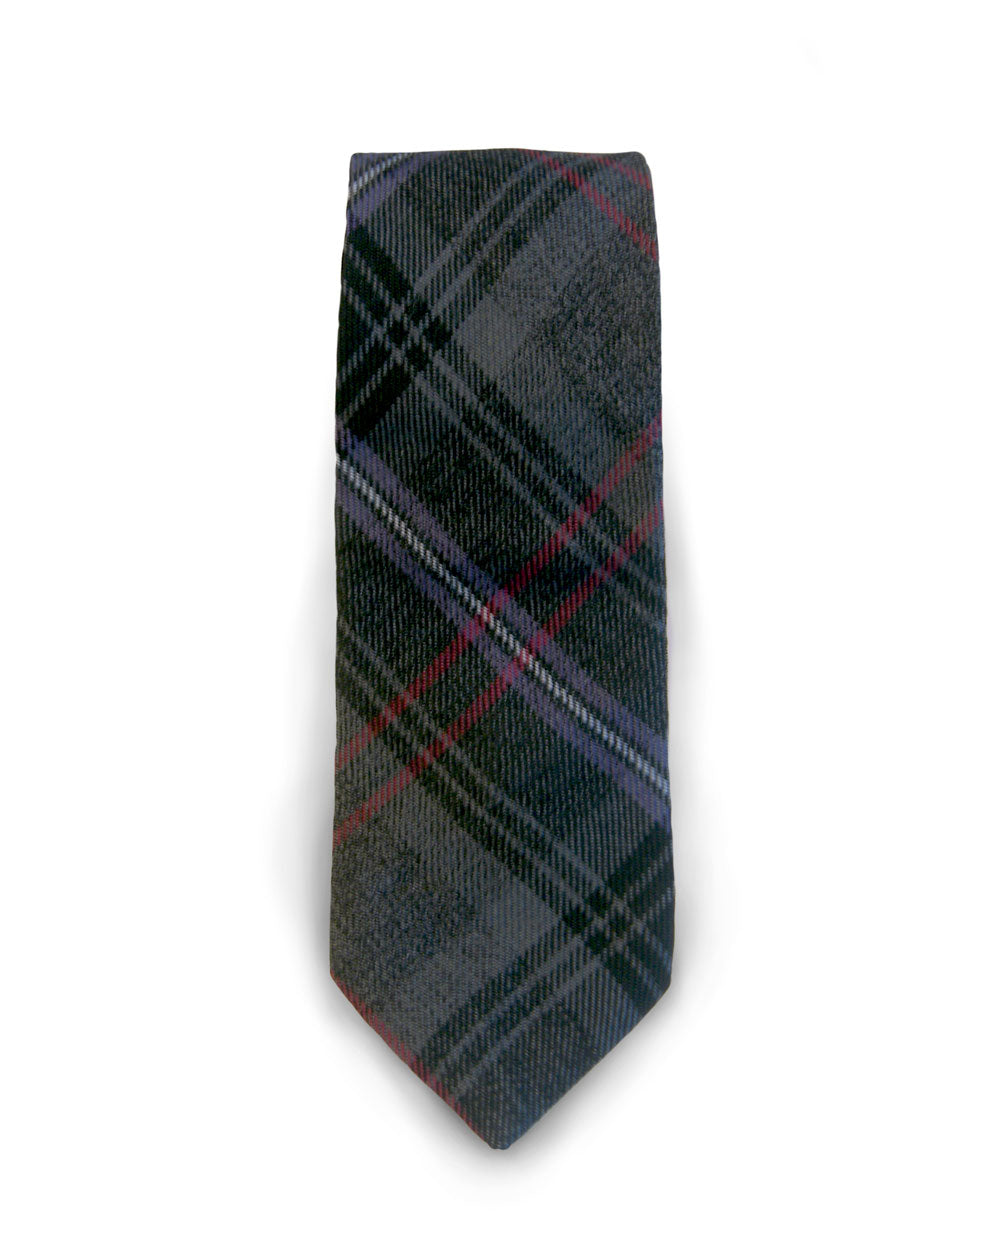 Scottish Spirit Tartan Tie - Gilt Edged